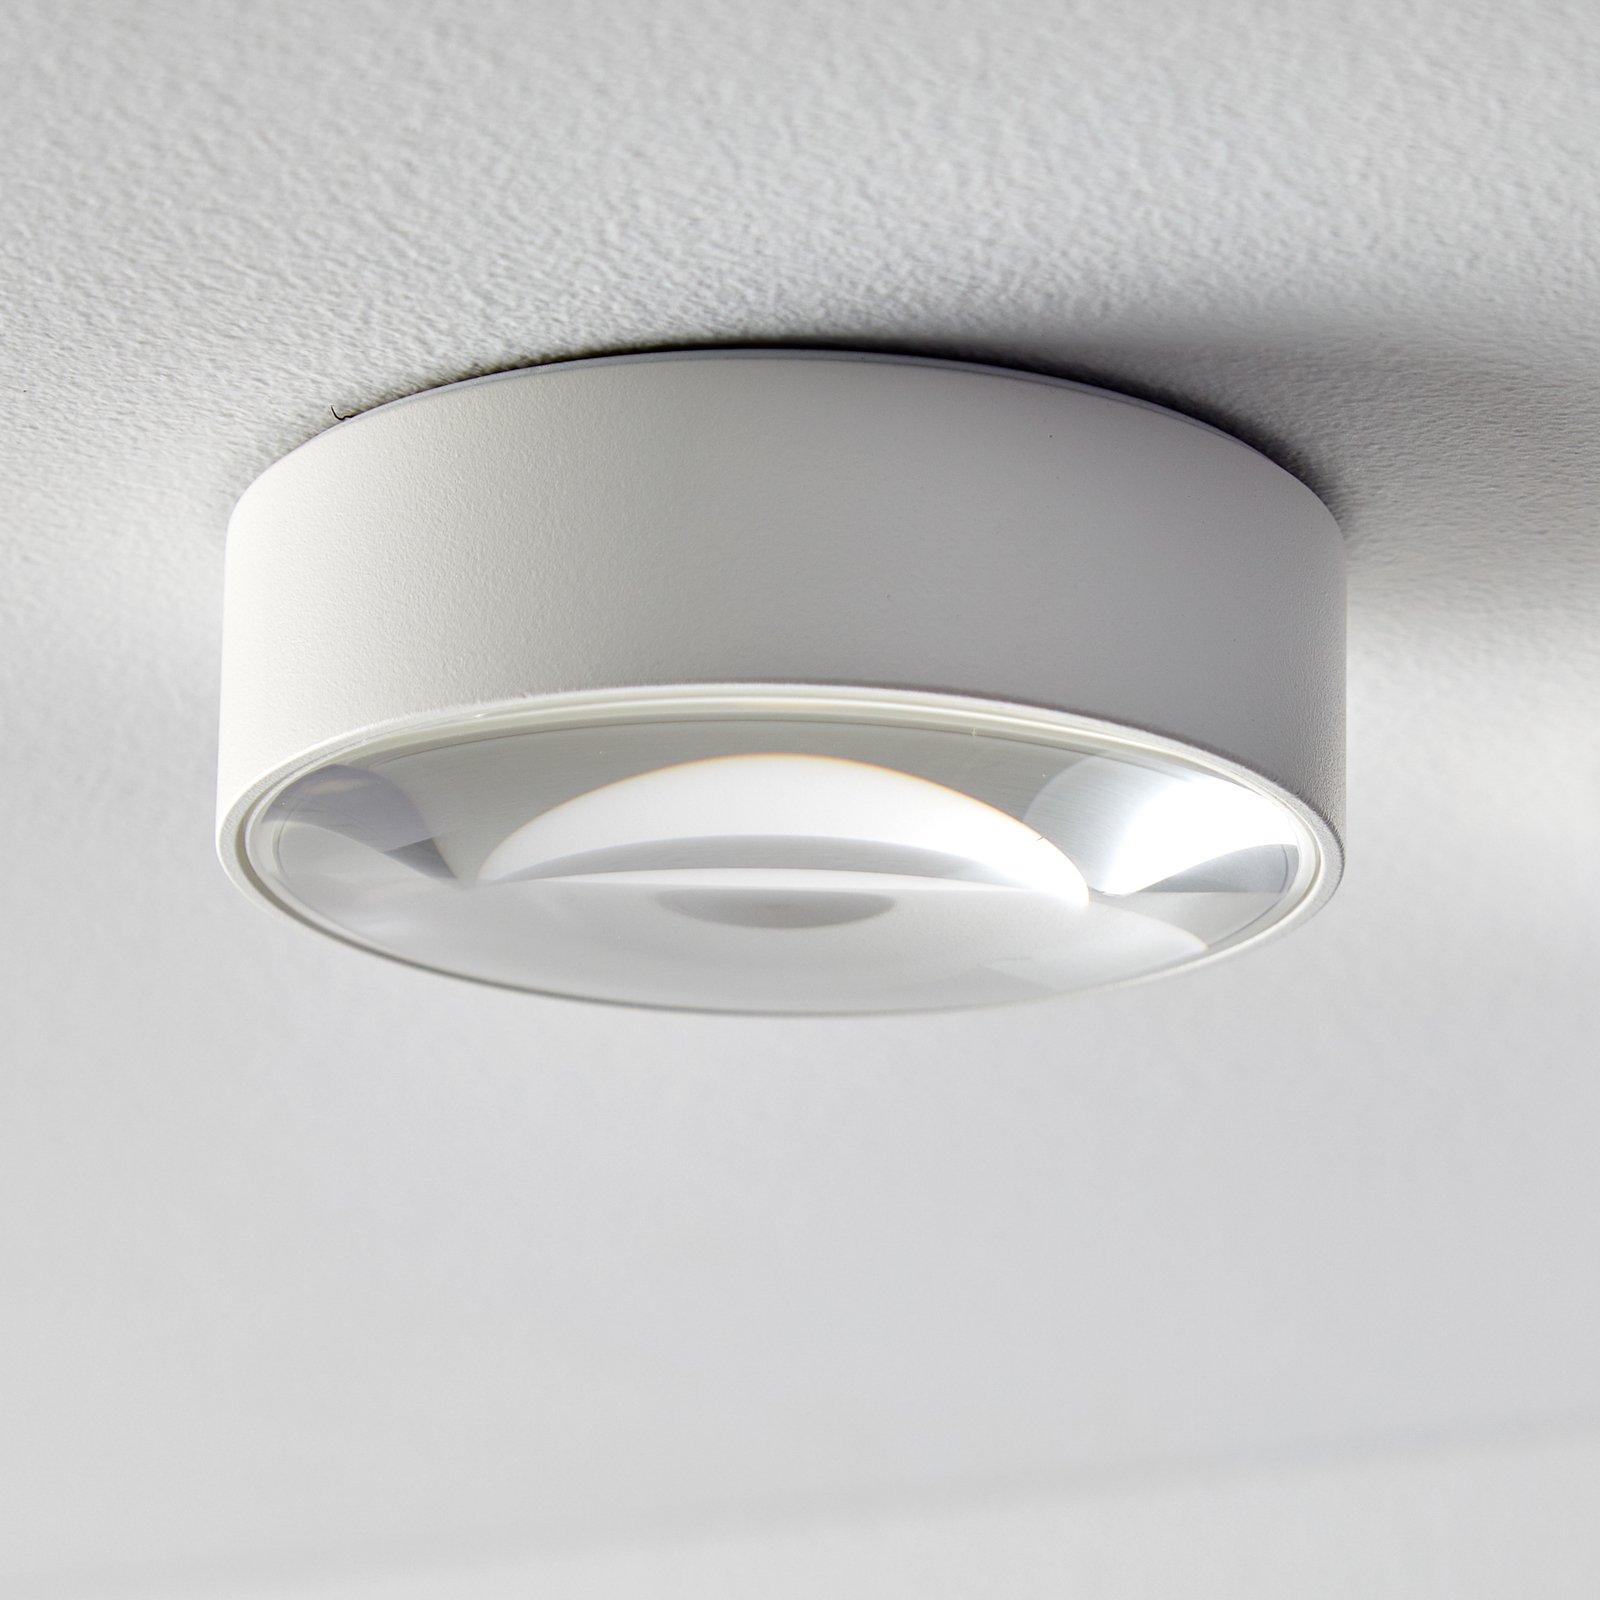 Knipoog verzending erger maken LOOM DESIGN Sif LED plafondlamp IP65 | Lampen24.be